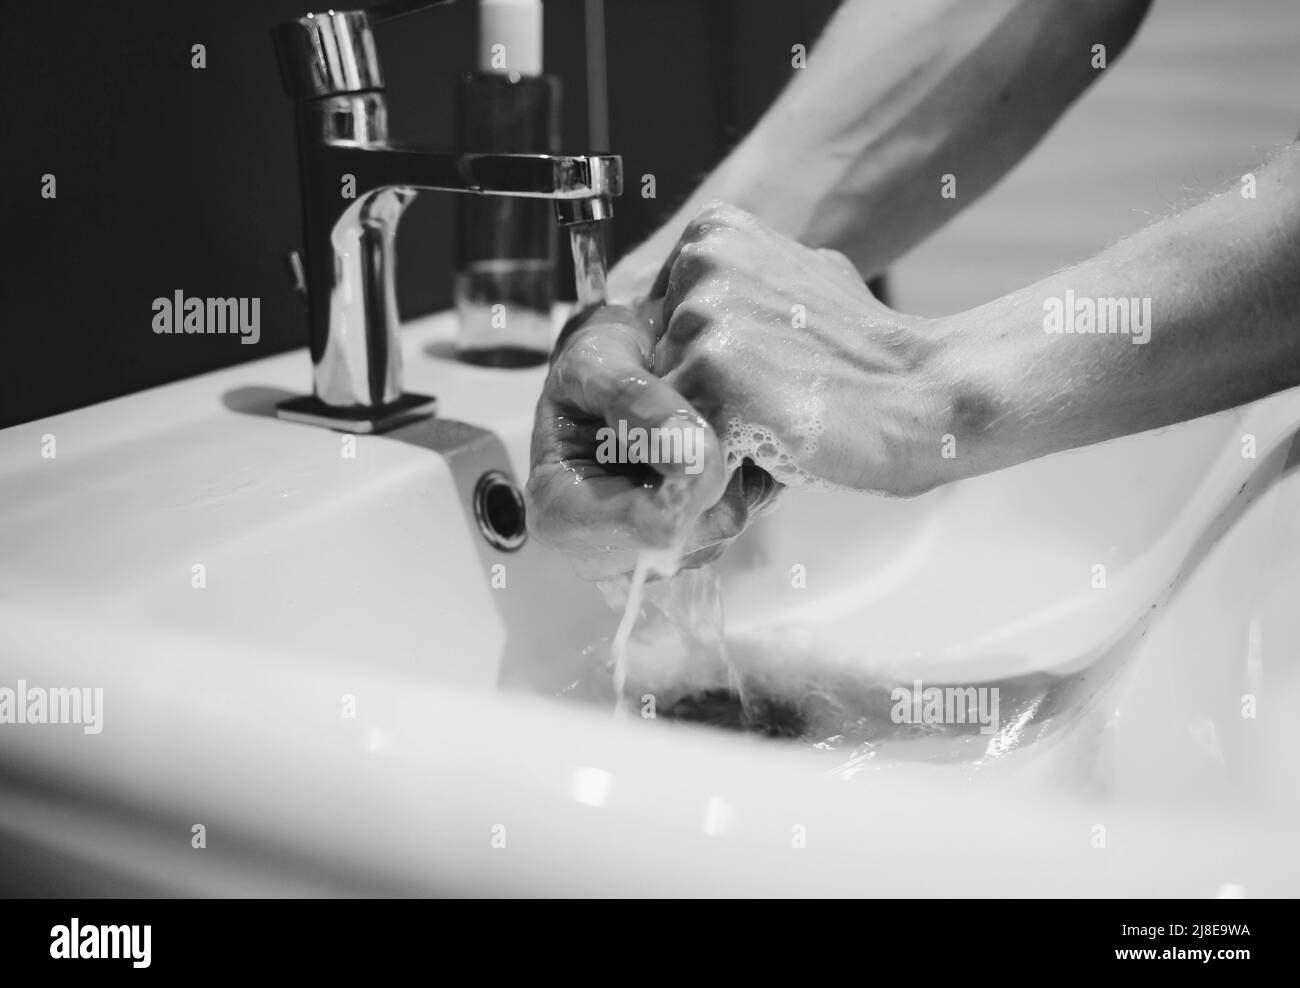 Santé et hygiène. Laver à la main avec du savon pendant la pandémie du coronavirus Banque D'Images